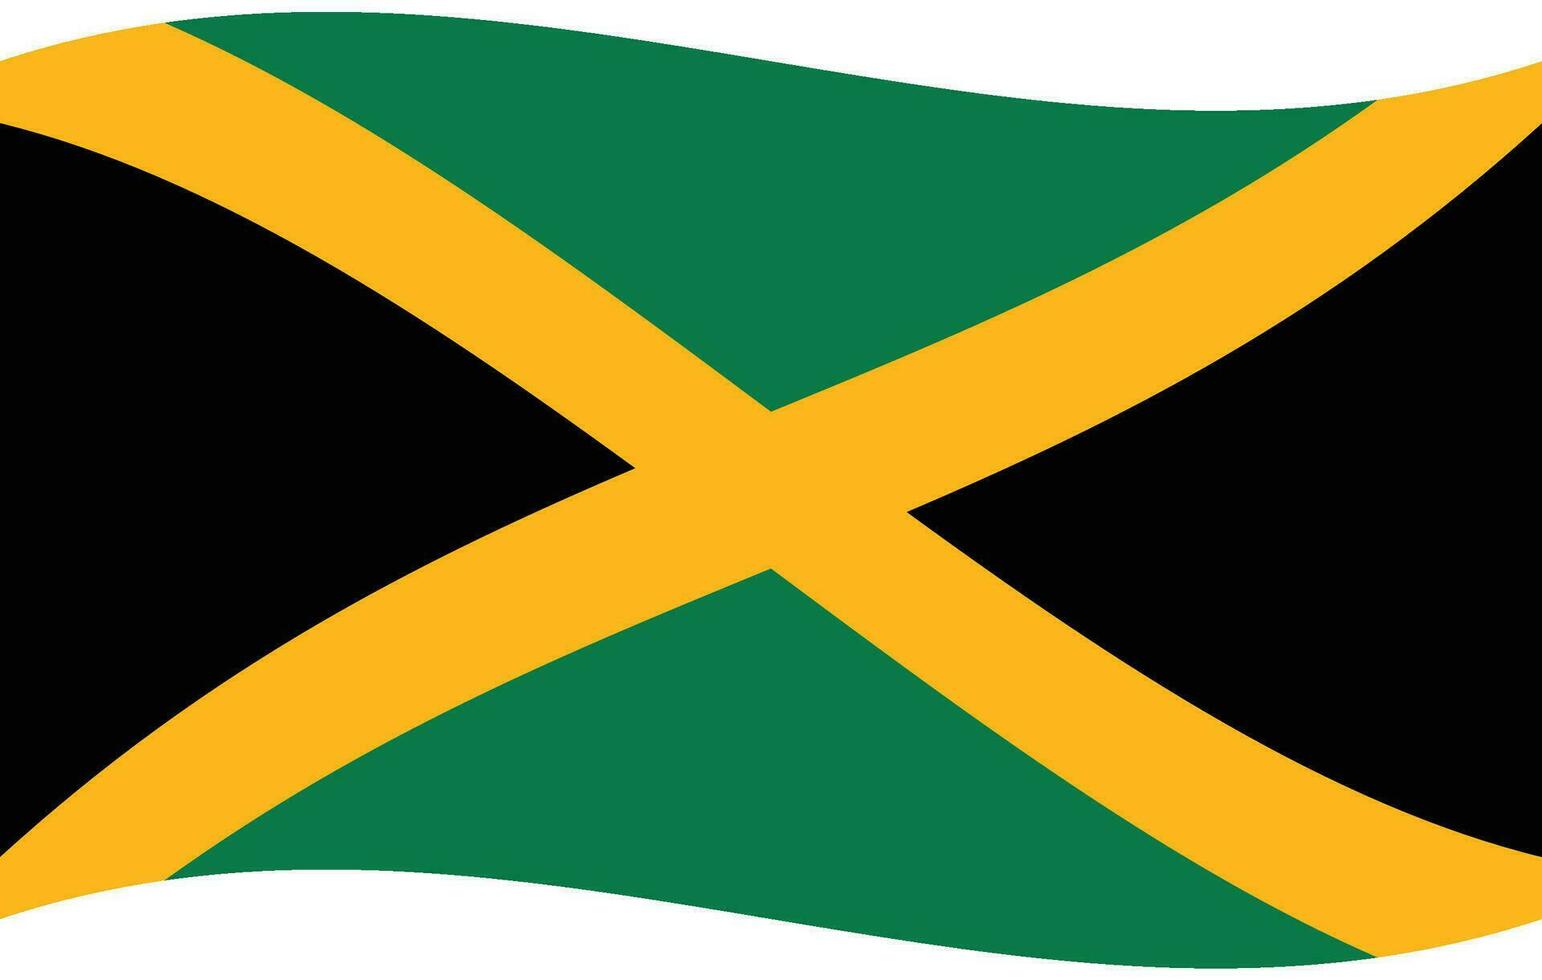 Jamaica flag wave. Jamaica flag. Flag of Jamaica vector